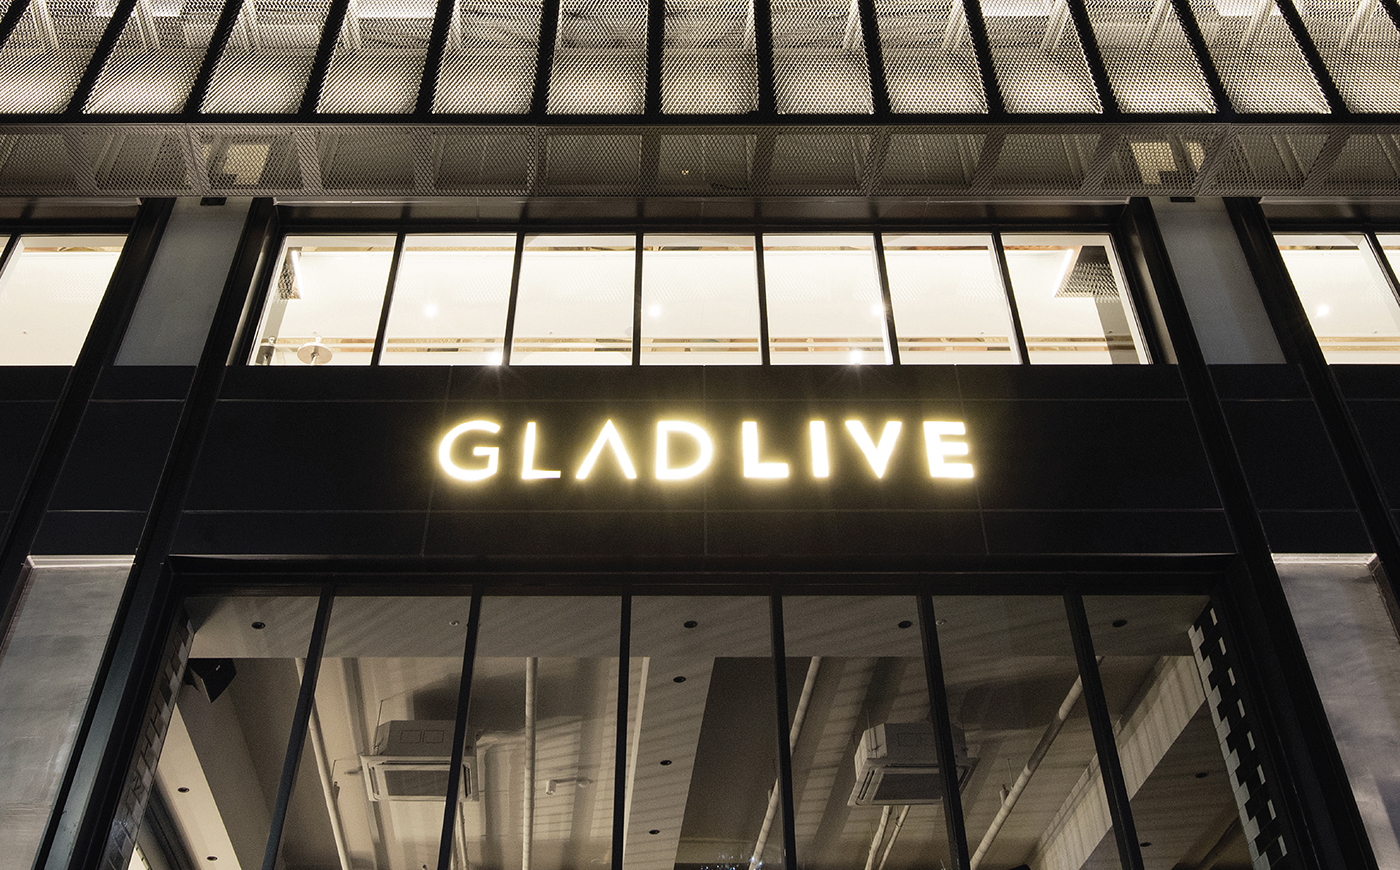 GLAD LIVE IDBRIDGE hotel signage design Brand Design Korea daerim